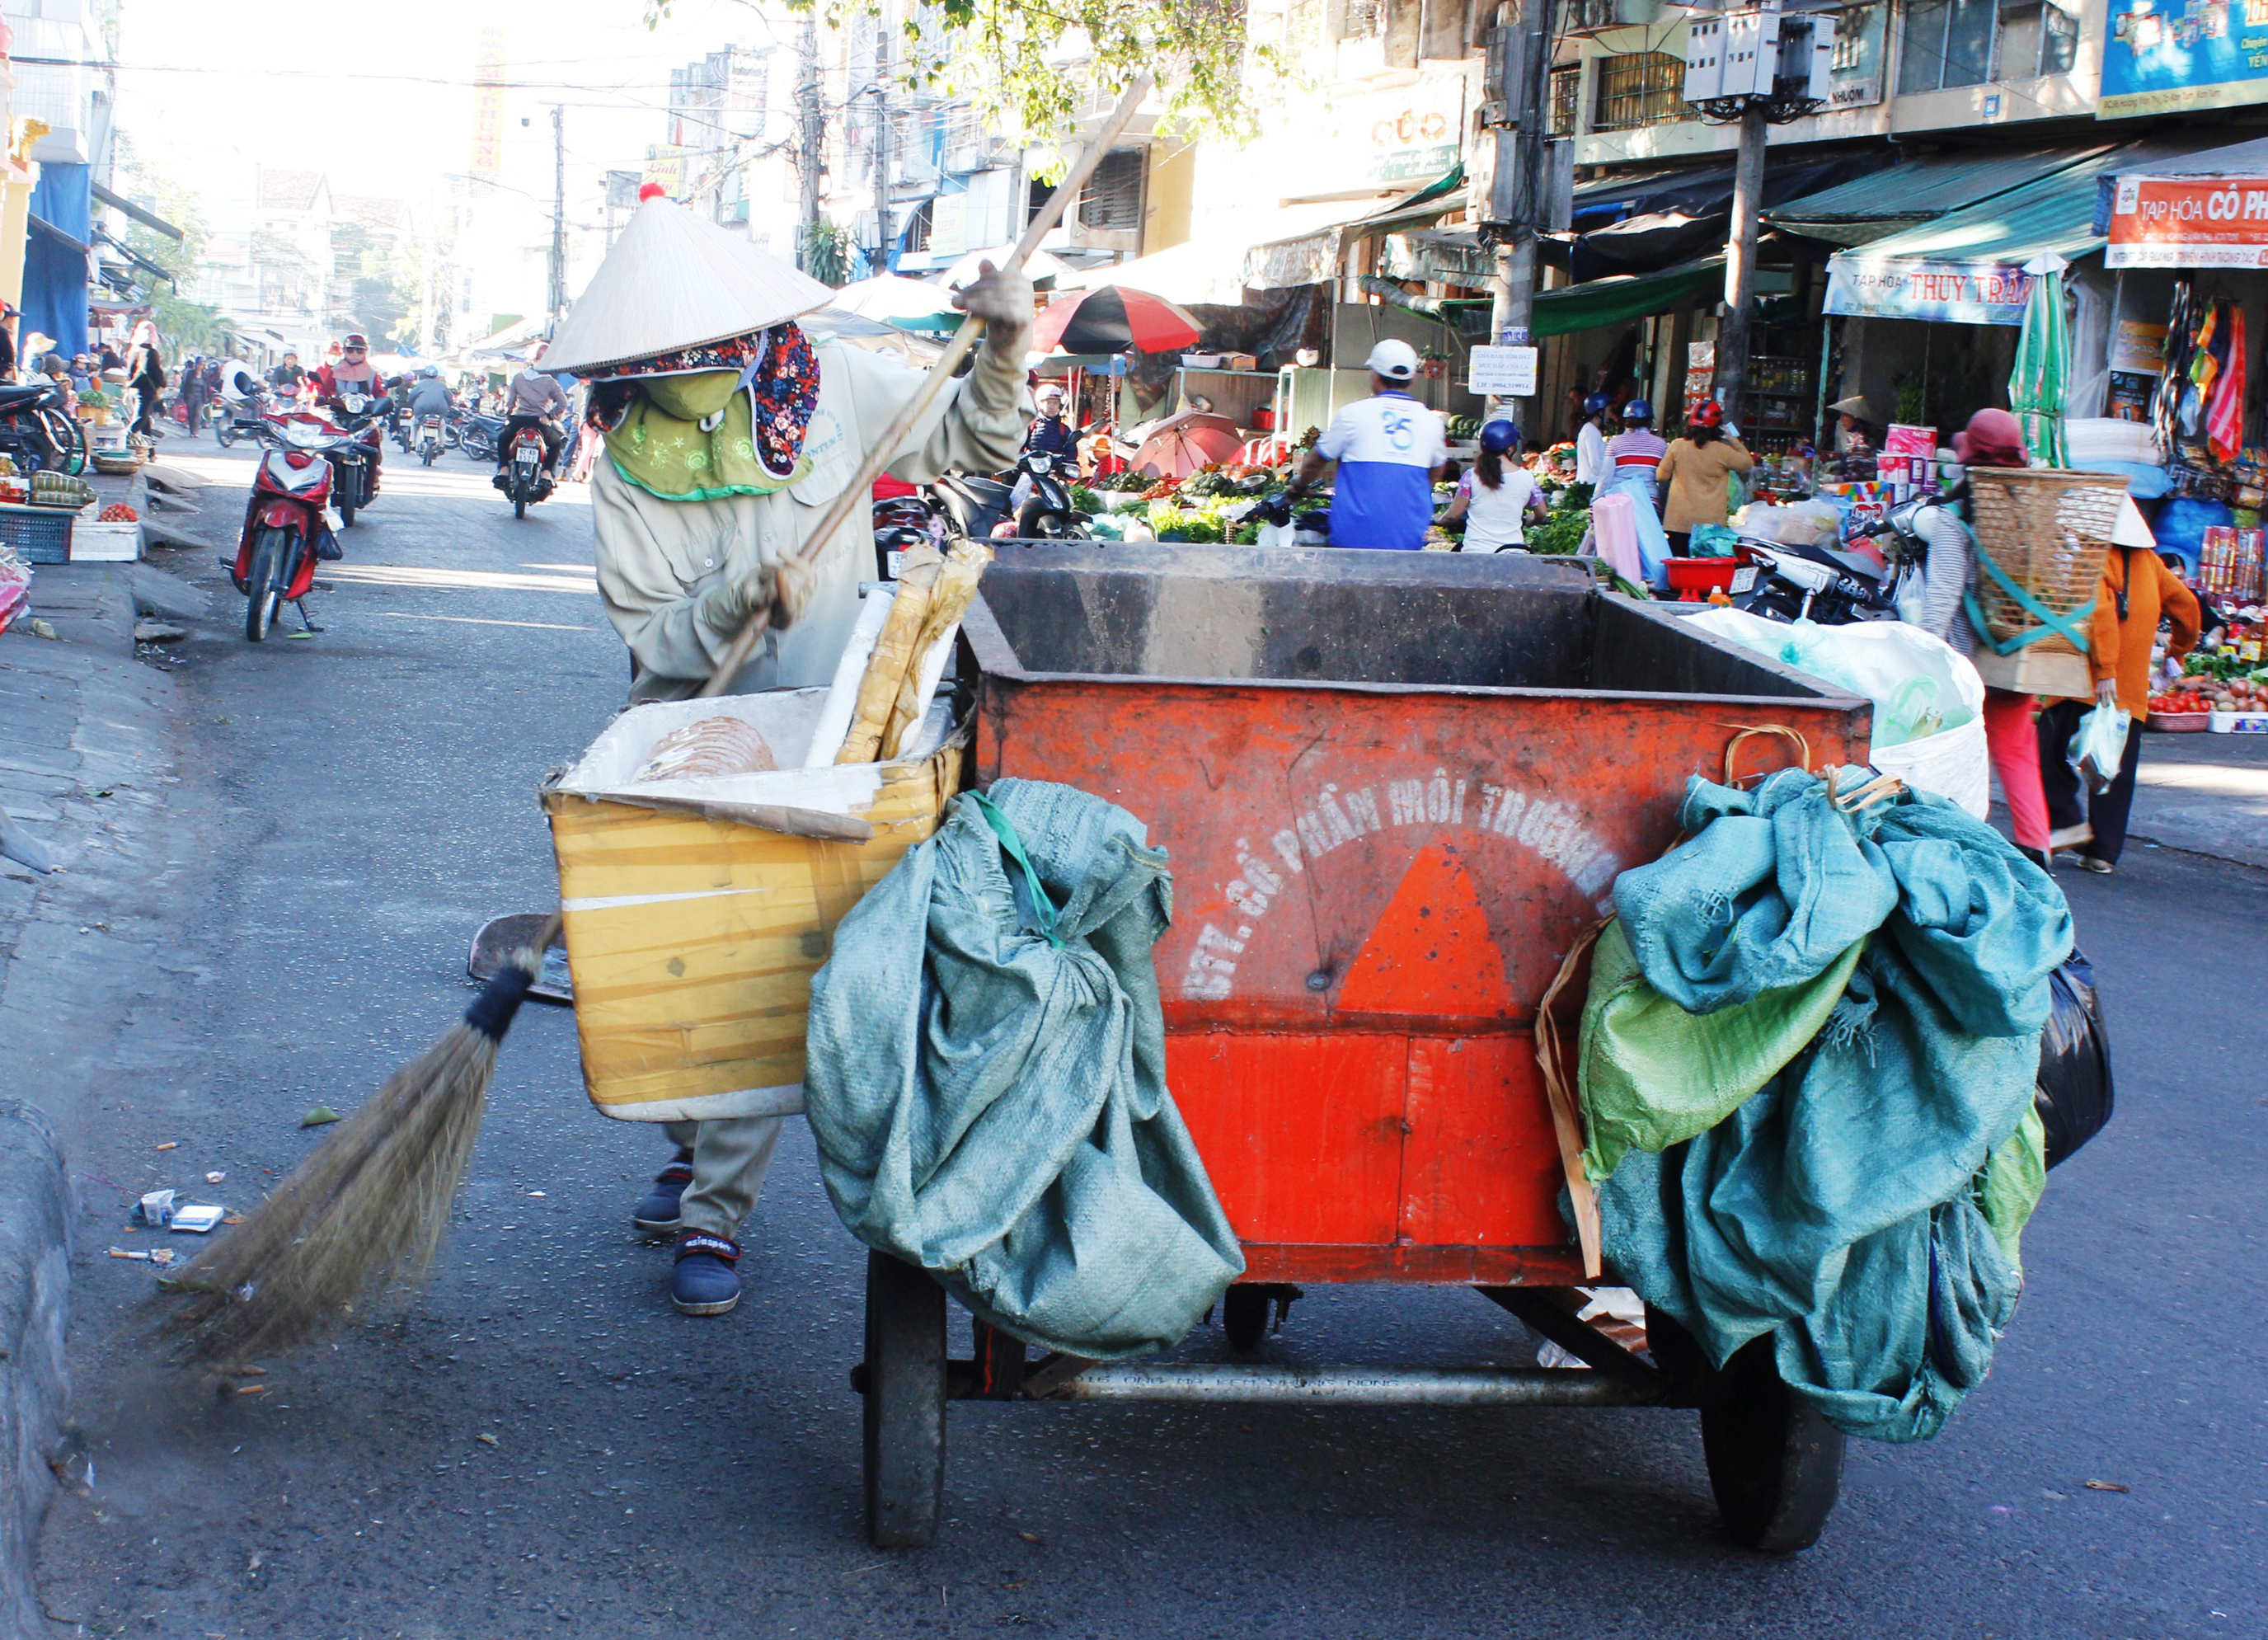 Hãy đến với hình ảnh về nghề quét rác, để cảm nhận sự khó khăn và nỗ lực của những người lao công để giữ cho đường phố luôn sạch sẽ, tạo nên một môi trường sống tốt đẹp hơn.